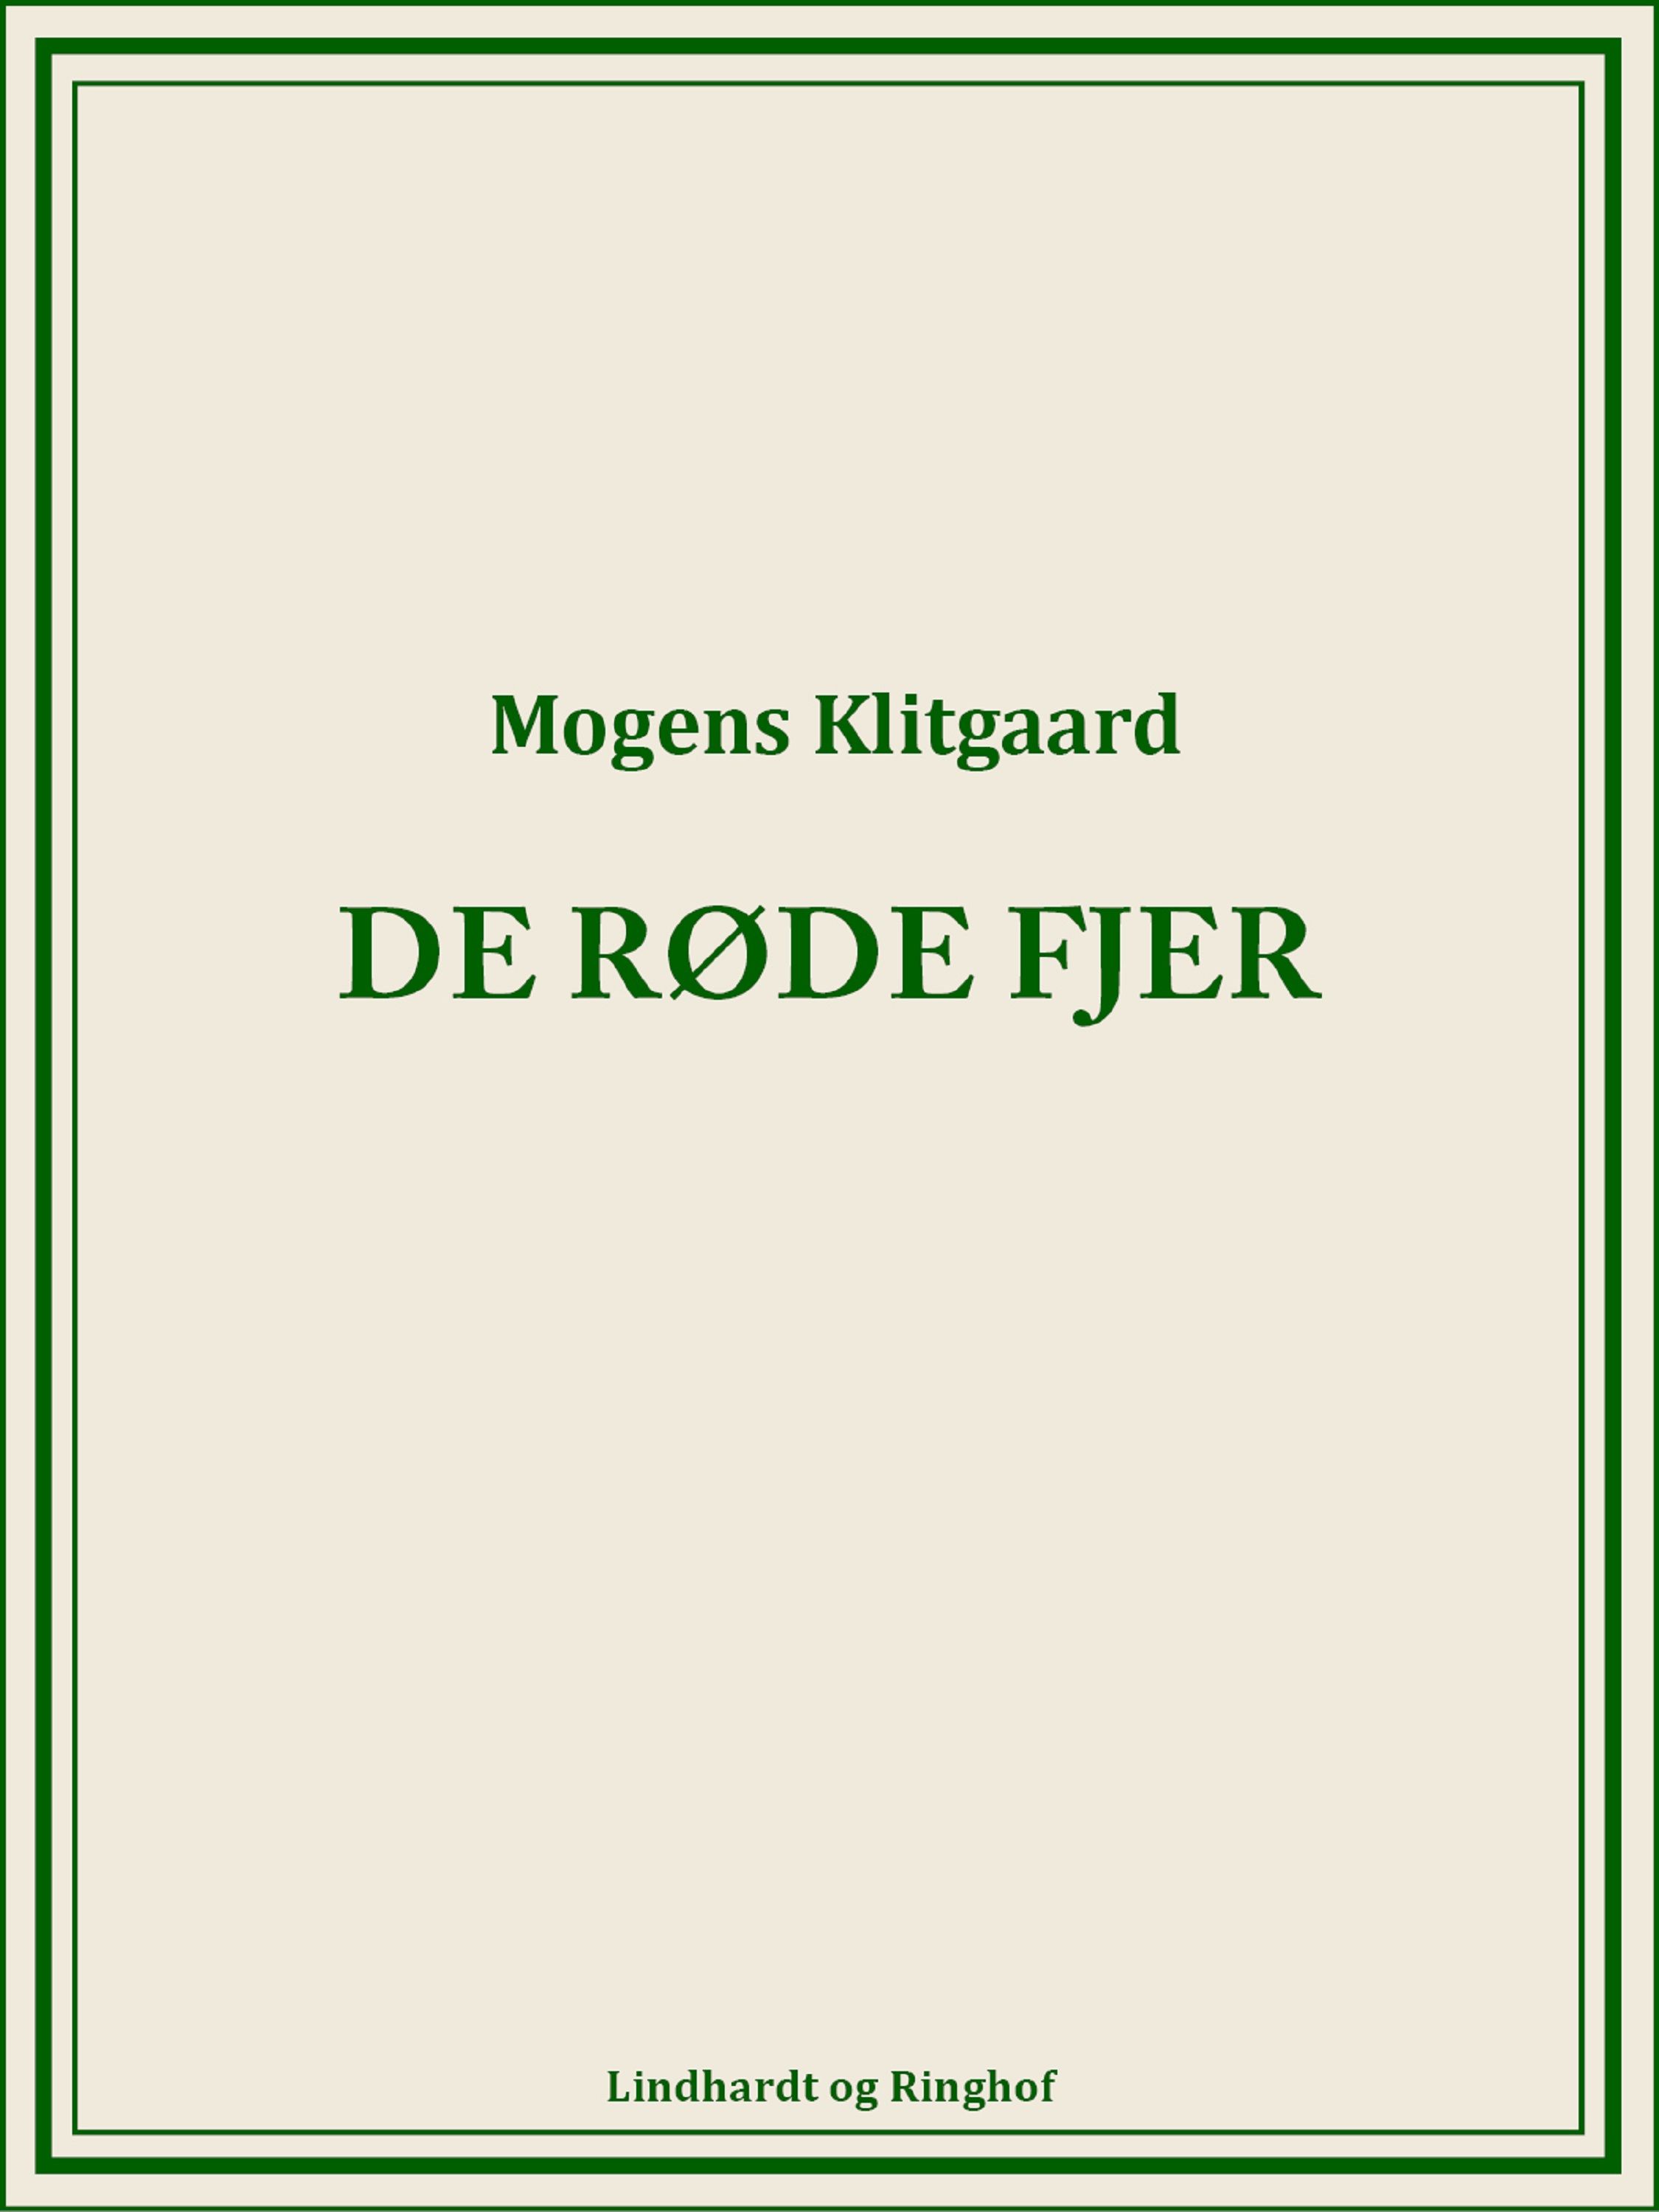 De røde fjer, audiobook by Mogens Klitgaard